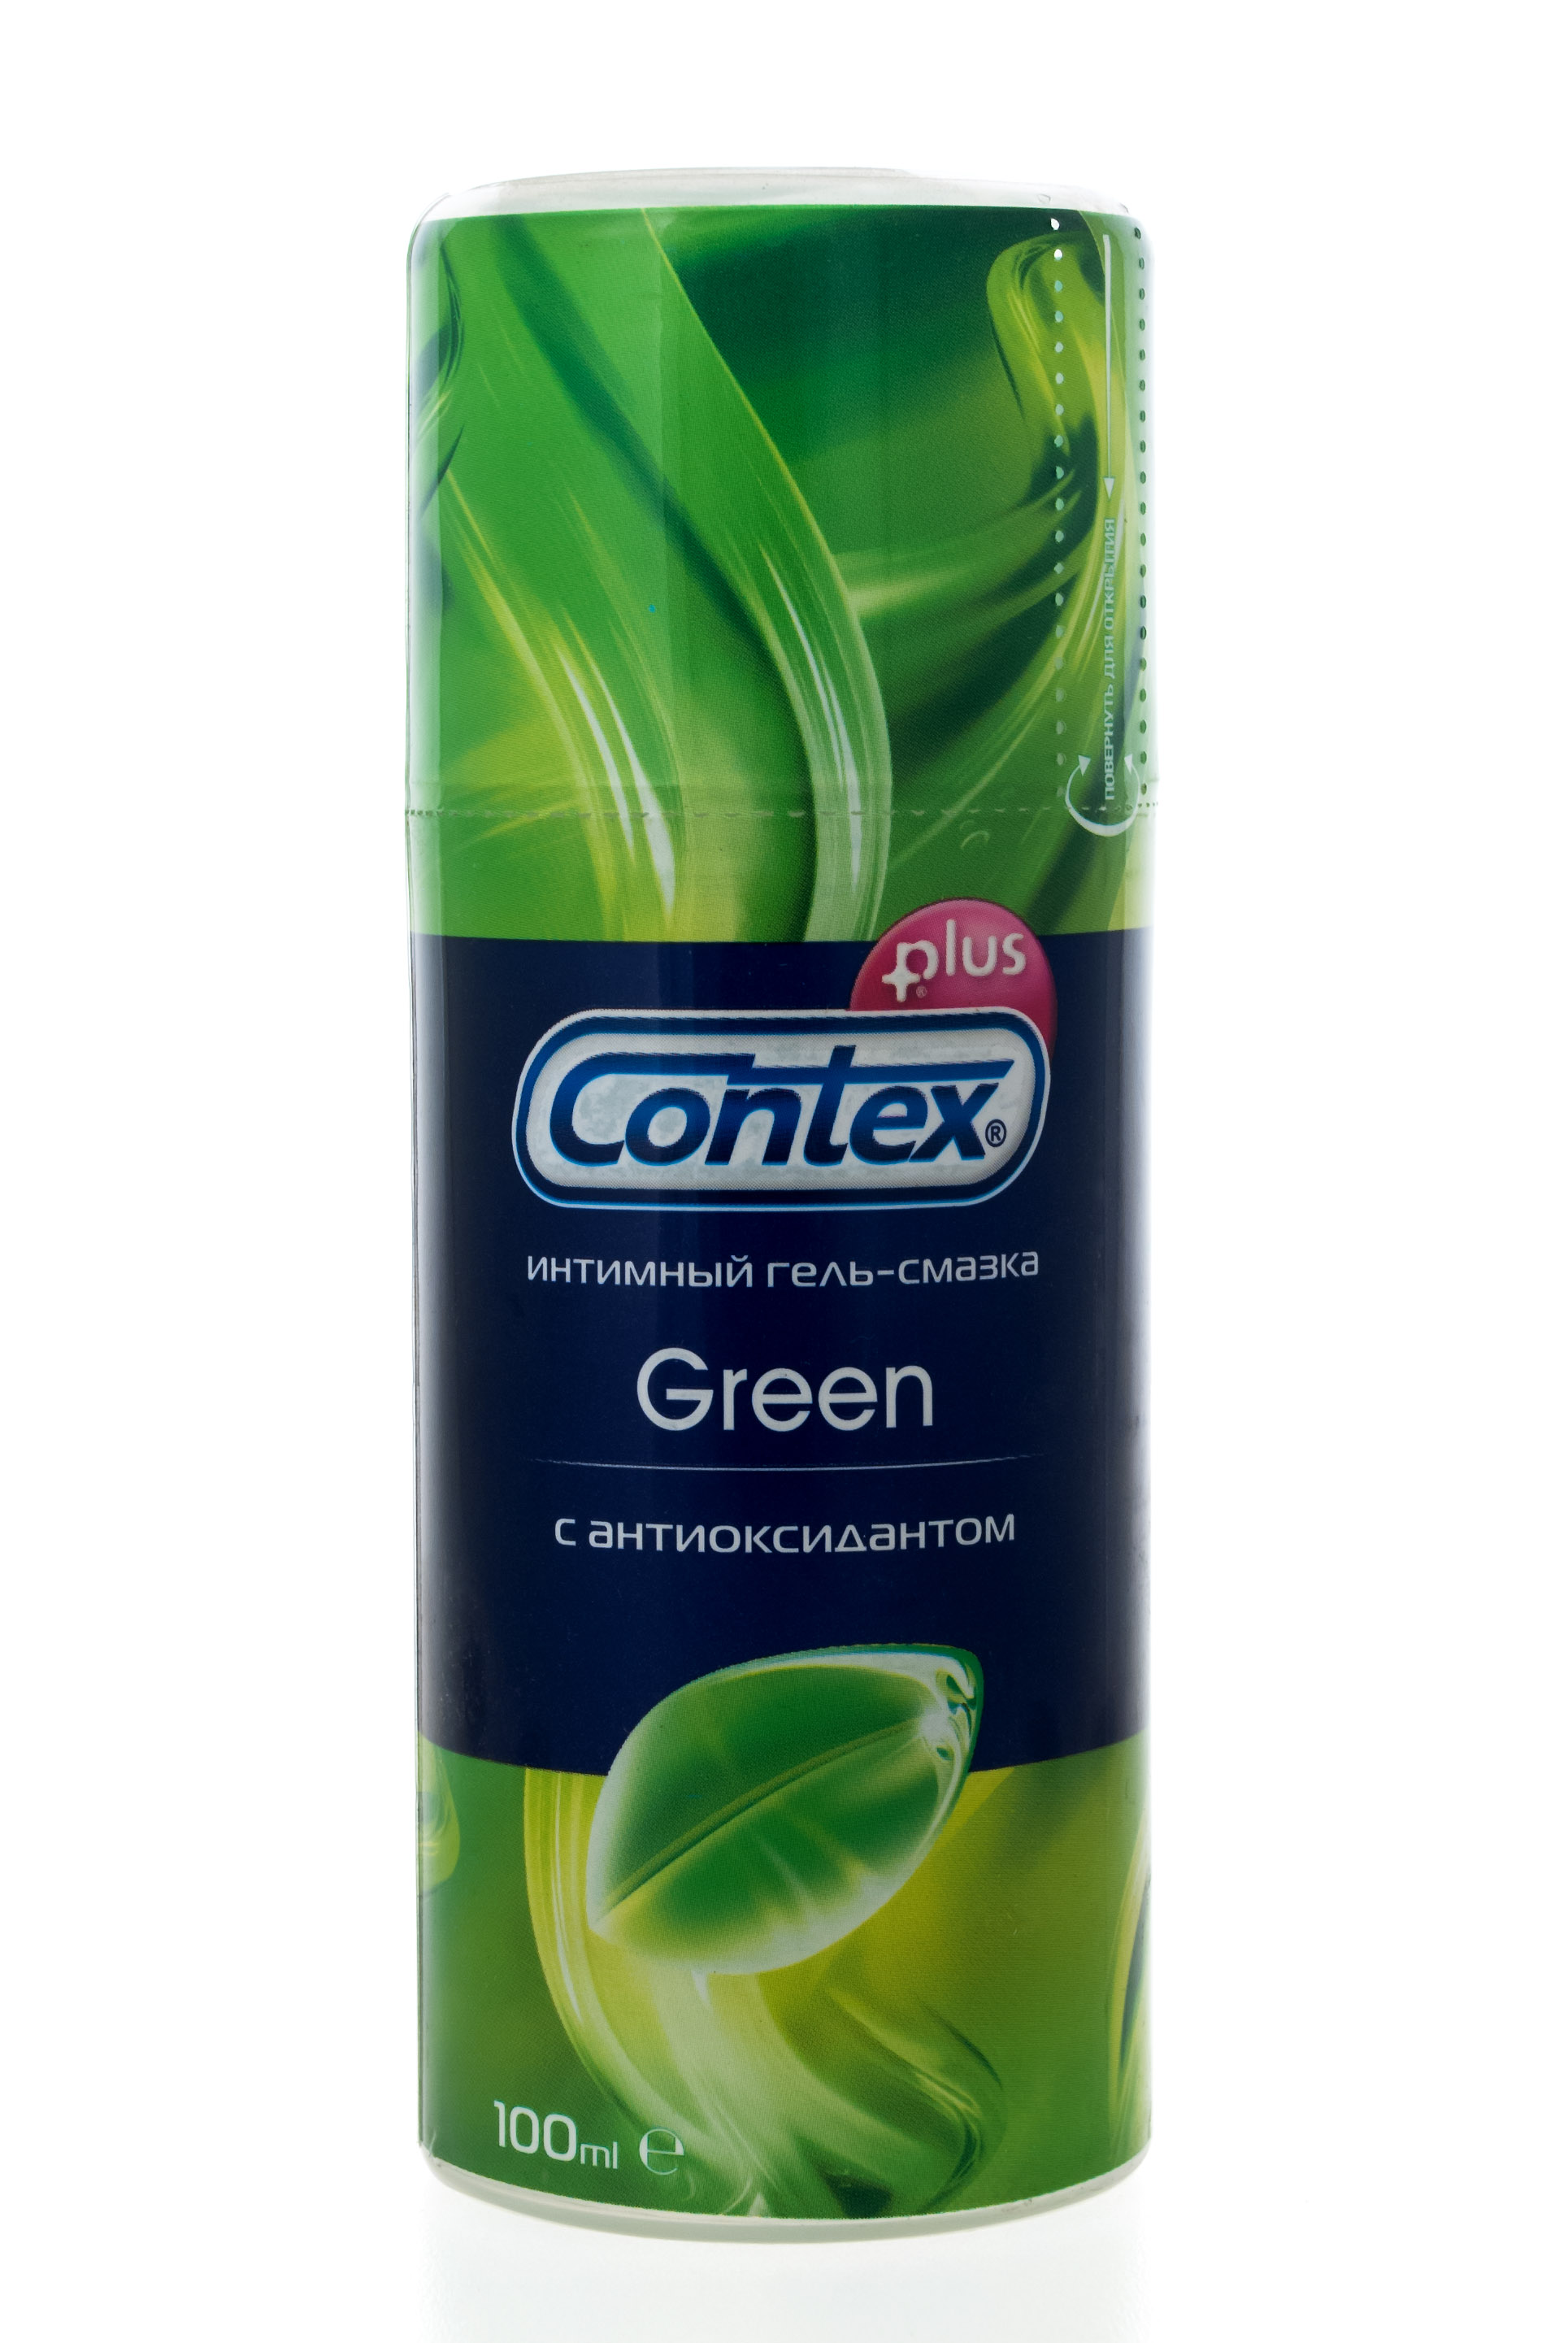 Contex Интимный гель-смазка Green, 100 мл (Contex, Гель-смаз